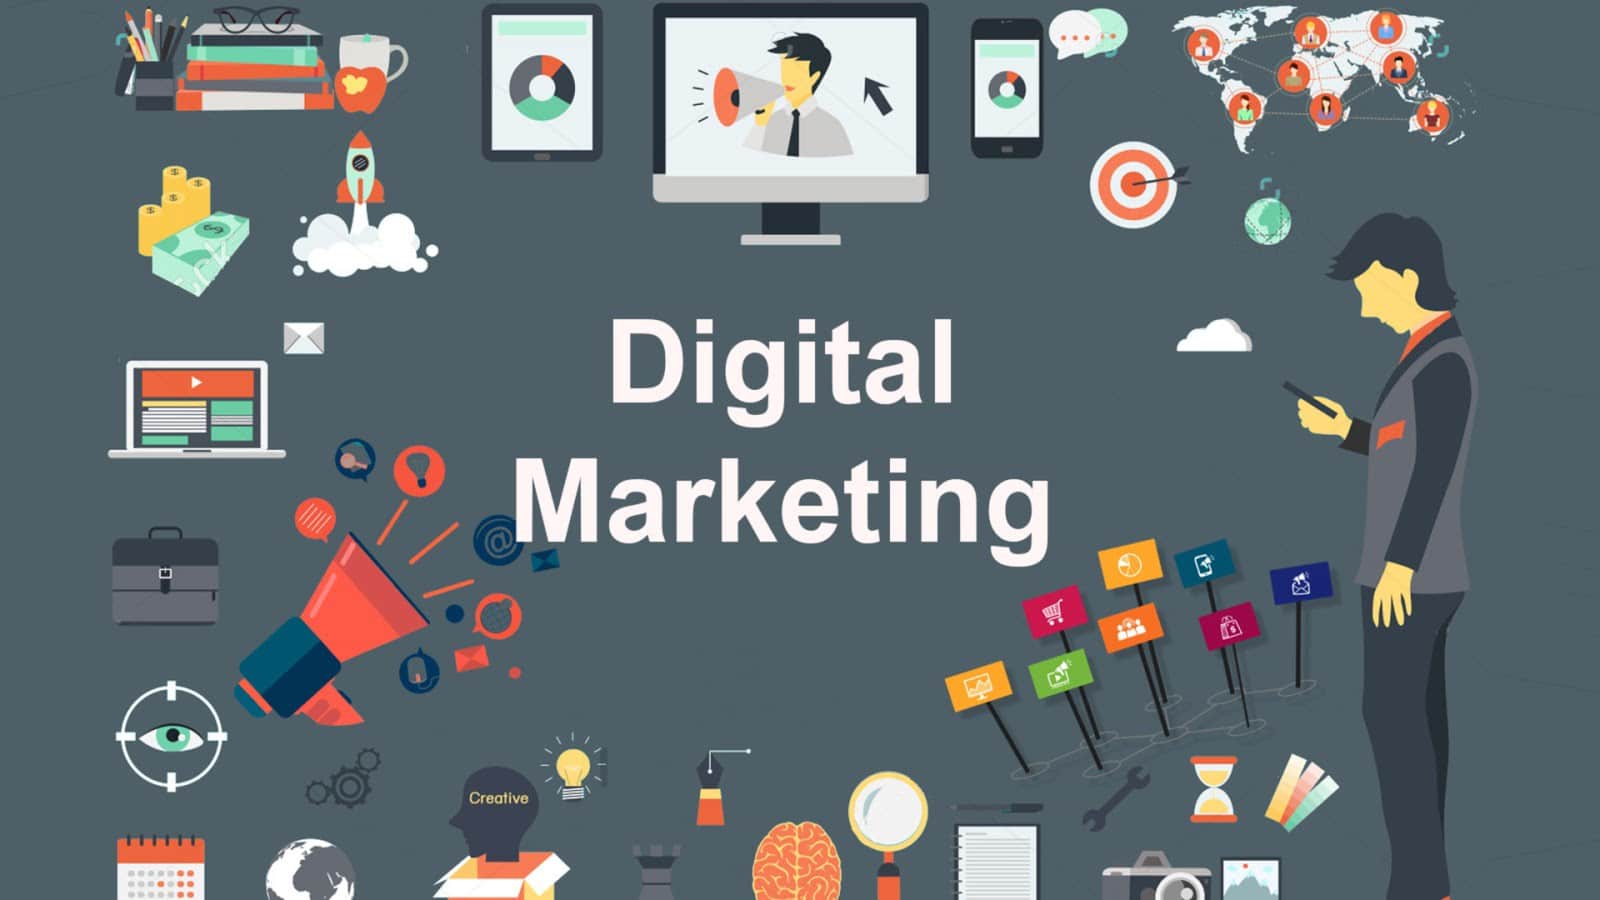 Digital Marketing là gì? 10 hình thức Digital Marketing phổ biến hiện nay